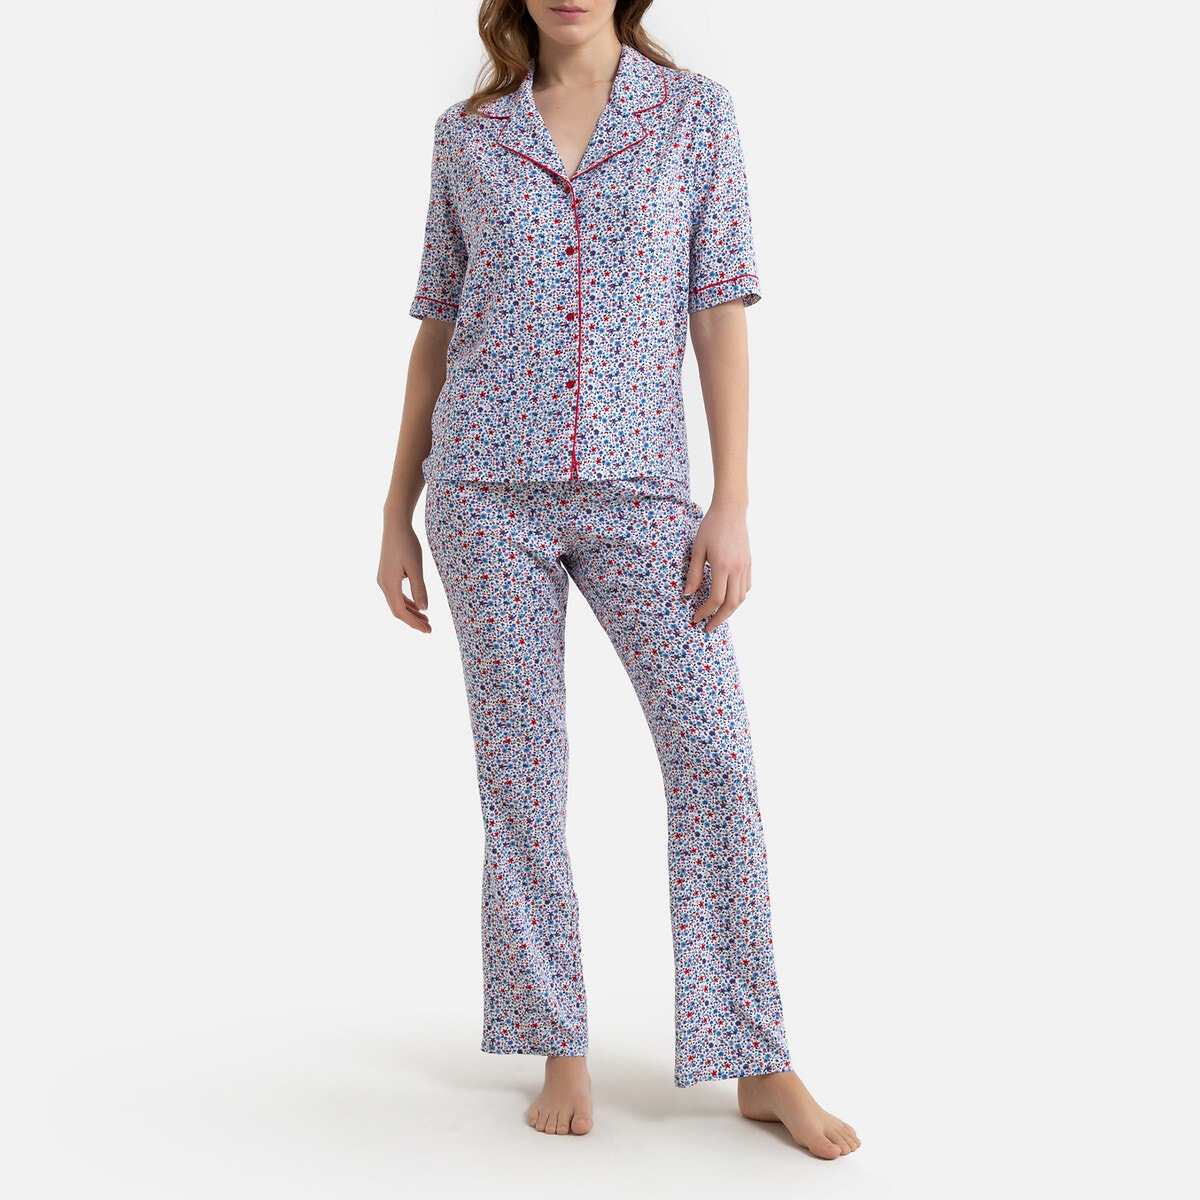 ΓΥΝΑΙΚΑ | Σύνολα ύπνου | Πυτζάμες Κοντομάνικη εμπριμέ πιτζάμα με φλοράλ μοτίβο